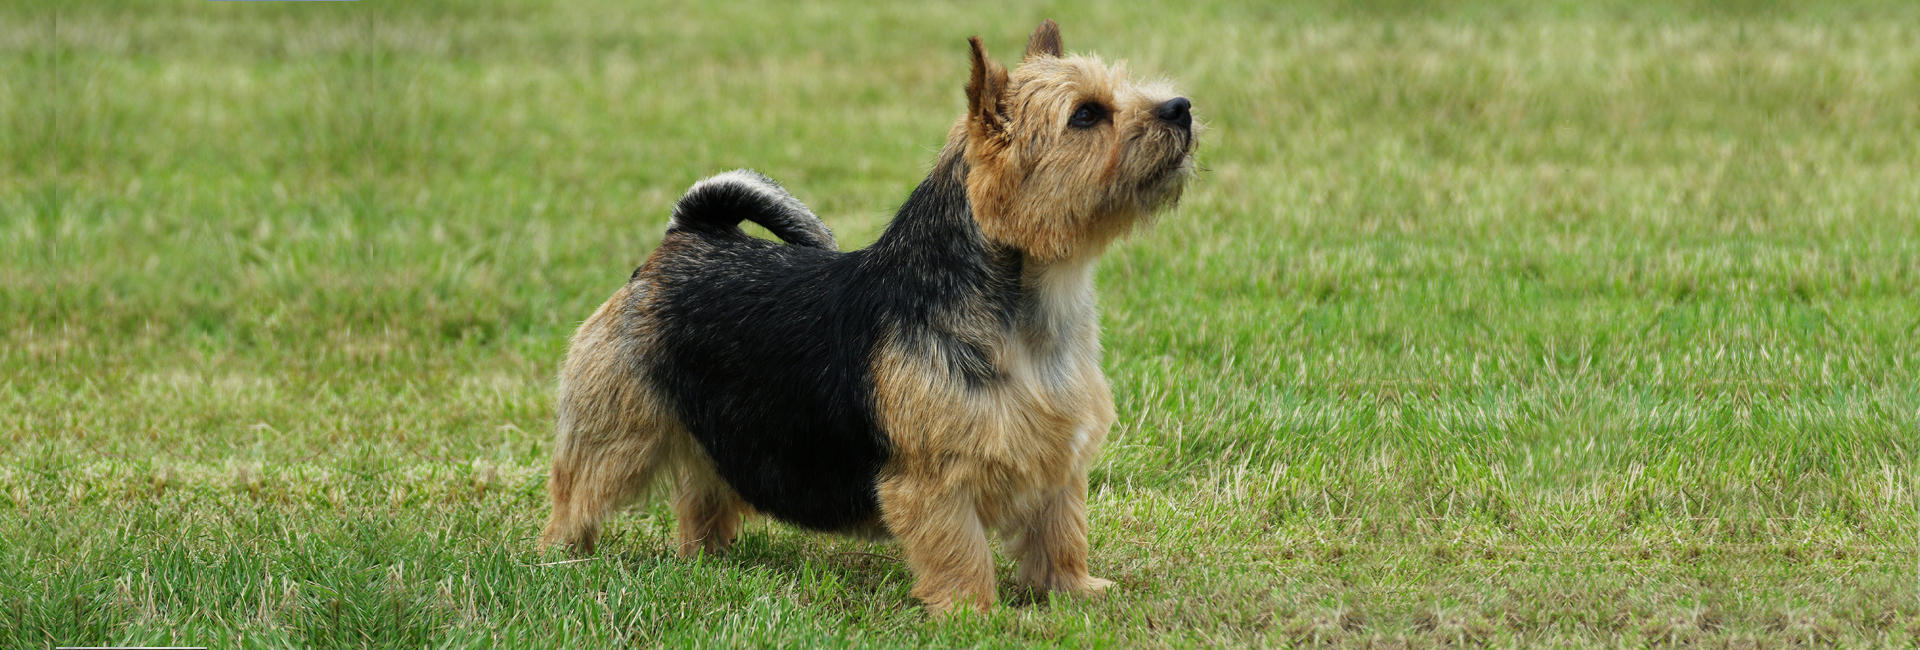 Norwich terrier stor